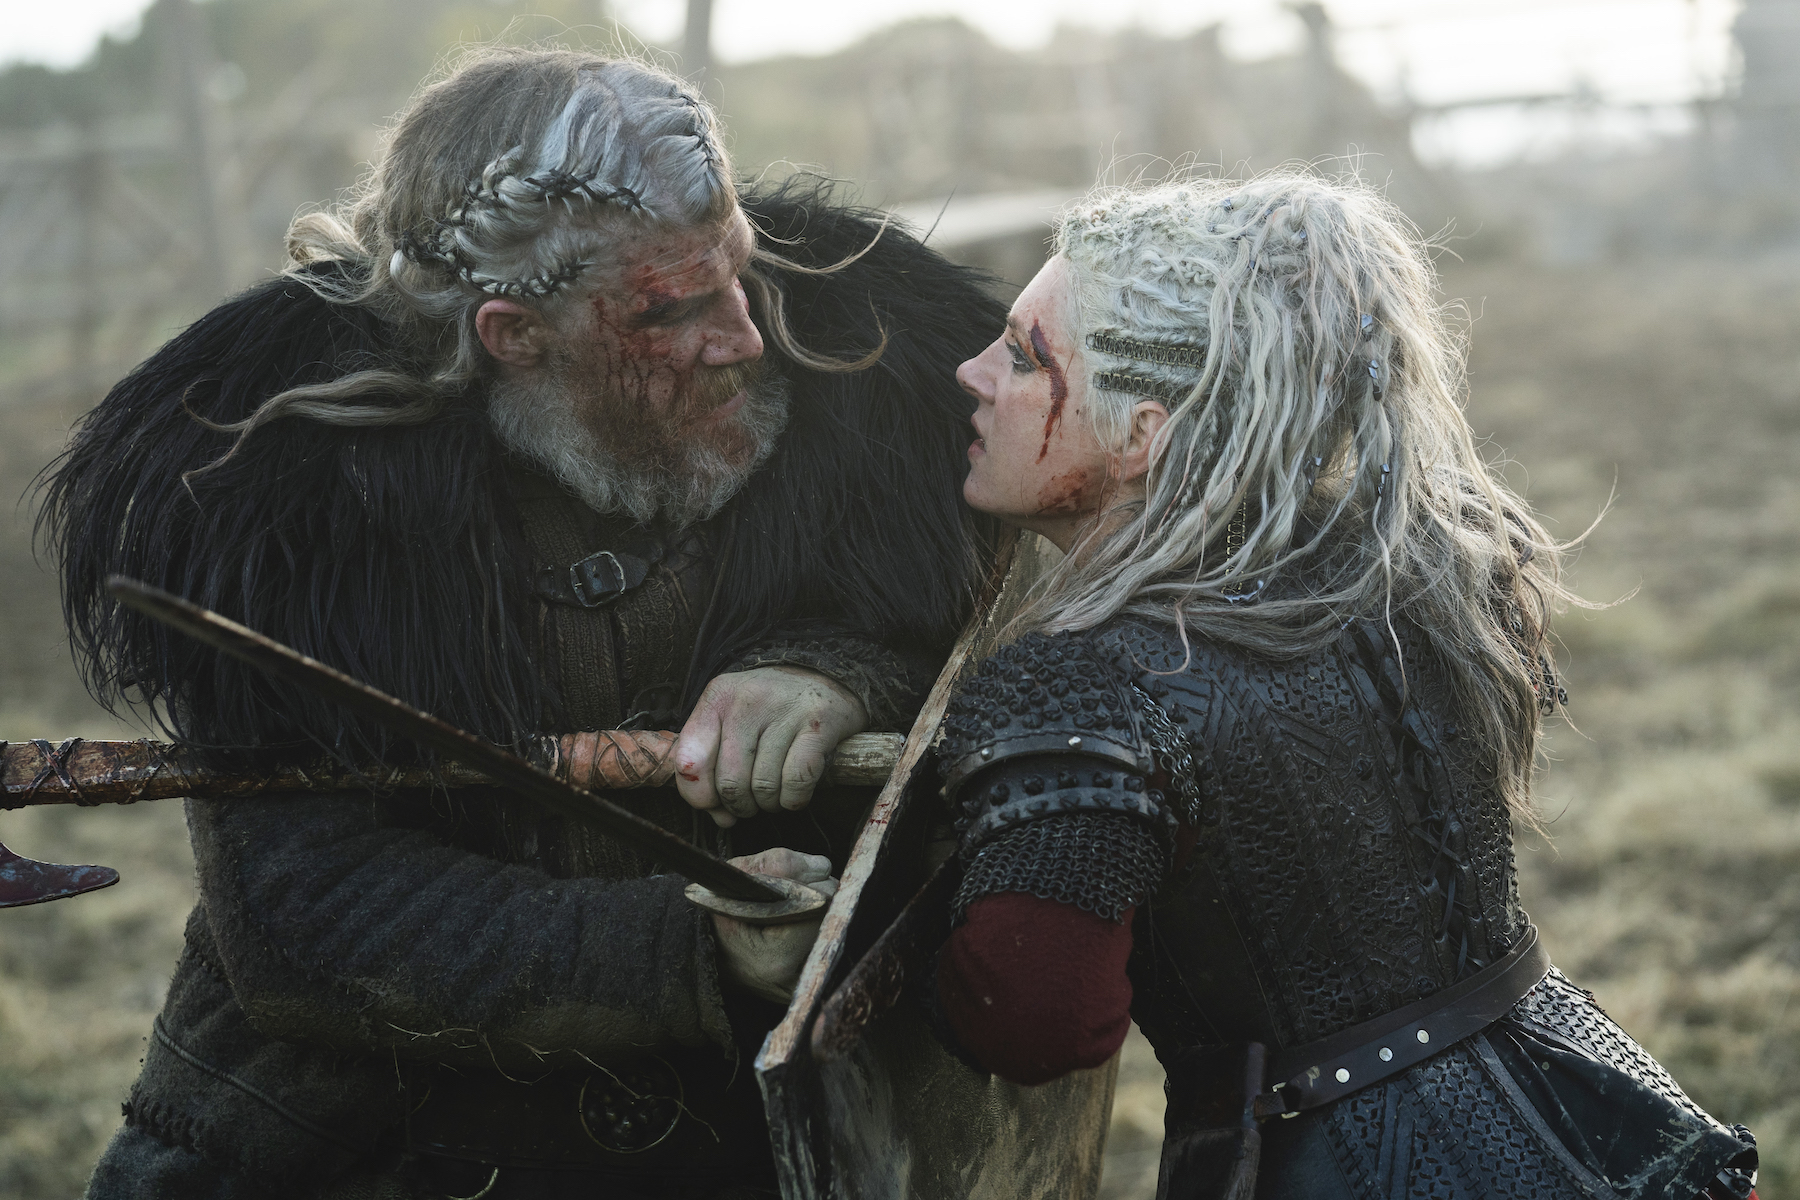 Proving her wrong  Ivar the boneless, Vikings, Shield maiden